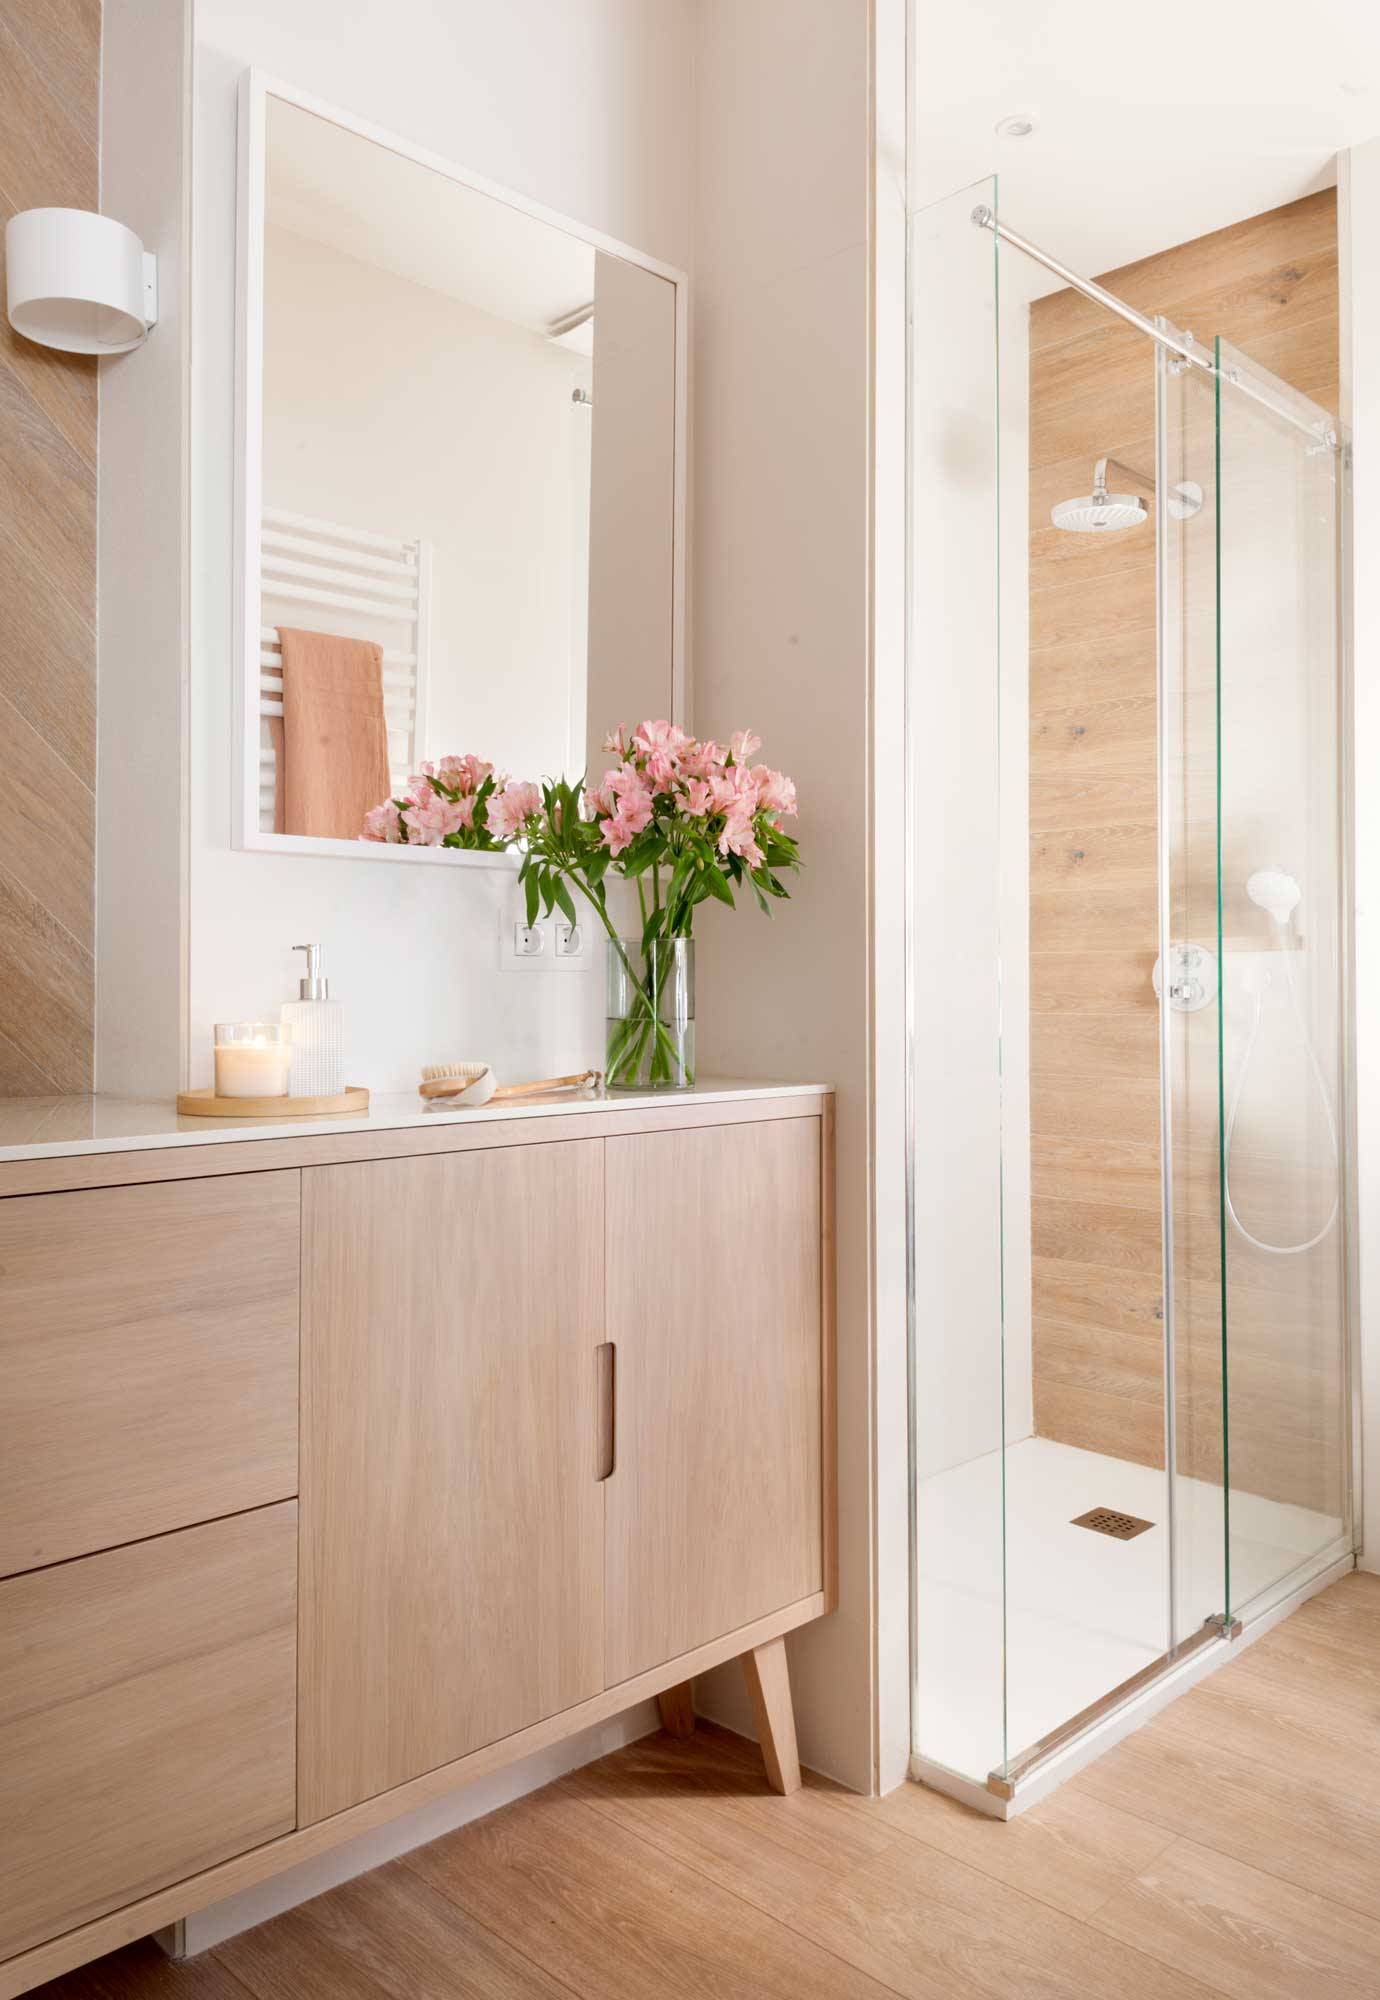 Reforma en baño con ducha con mampara y mueble de madera. Pavimento, de madera. 